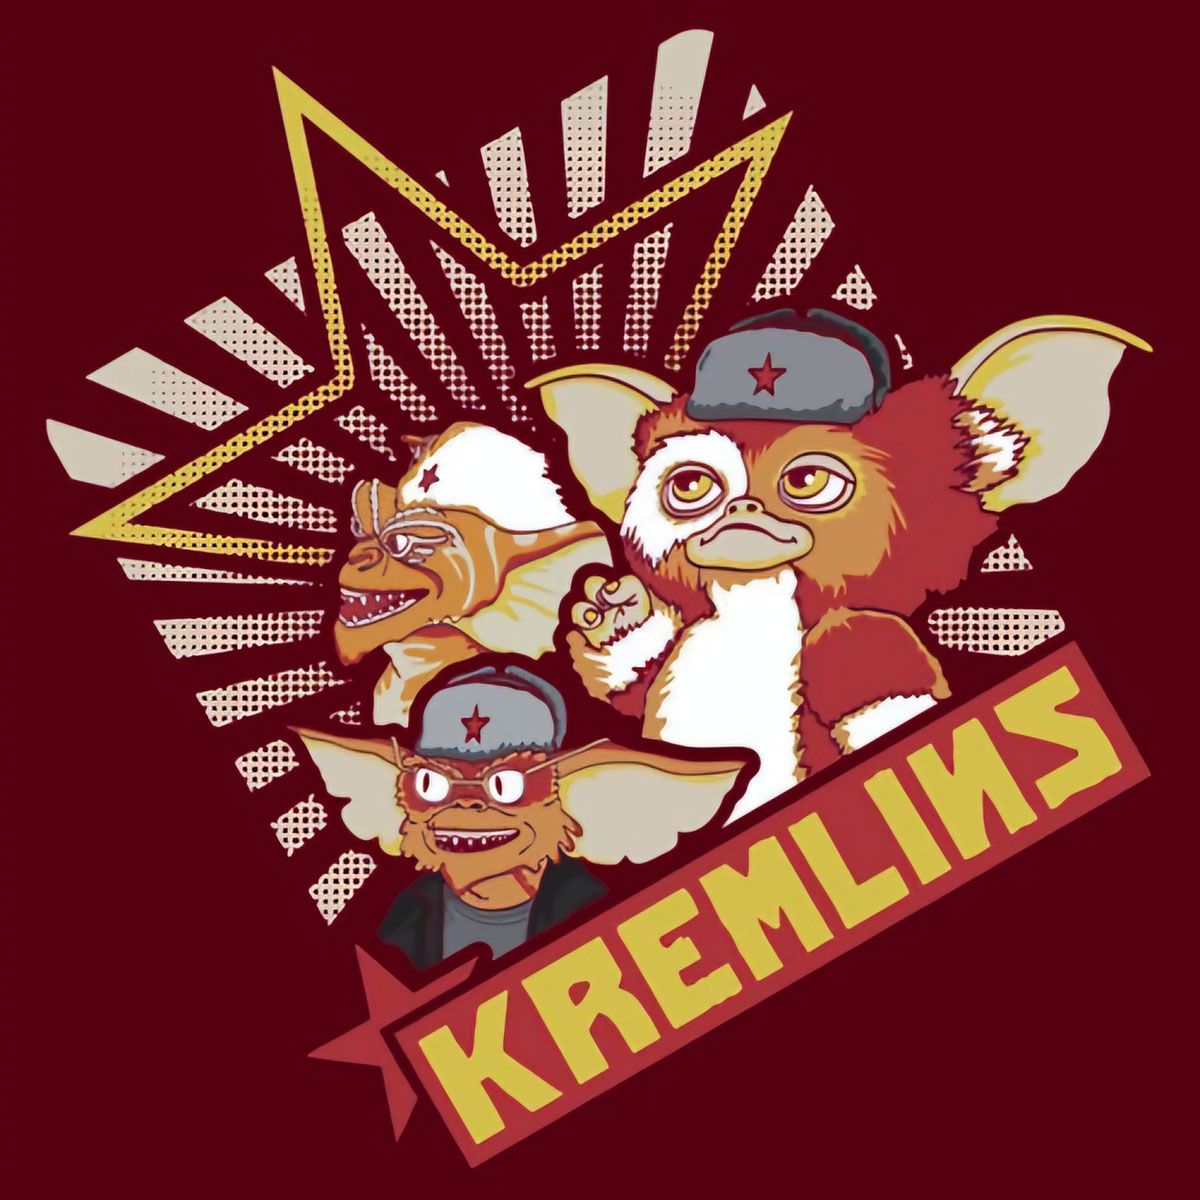 Nome do produto: Kremlins